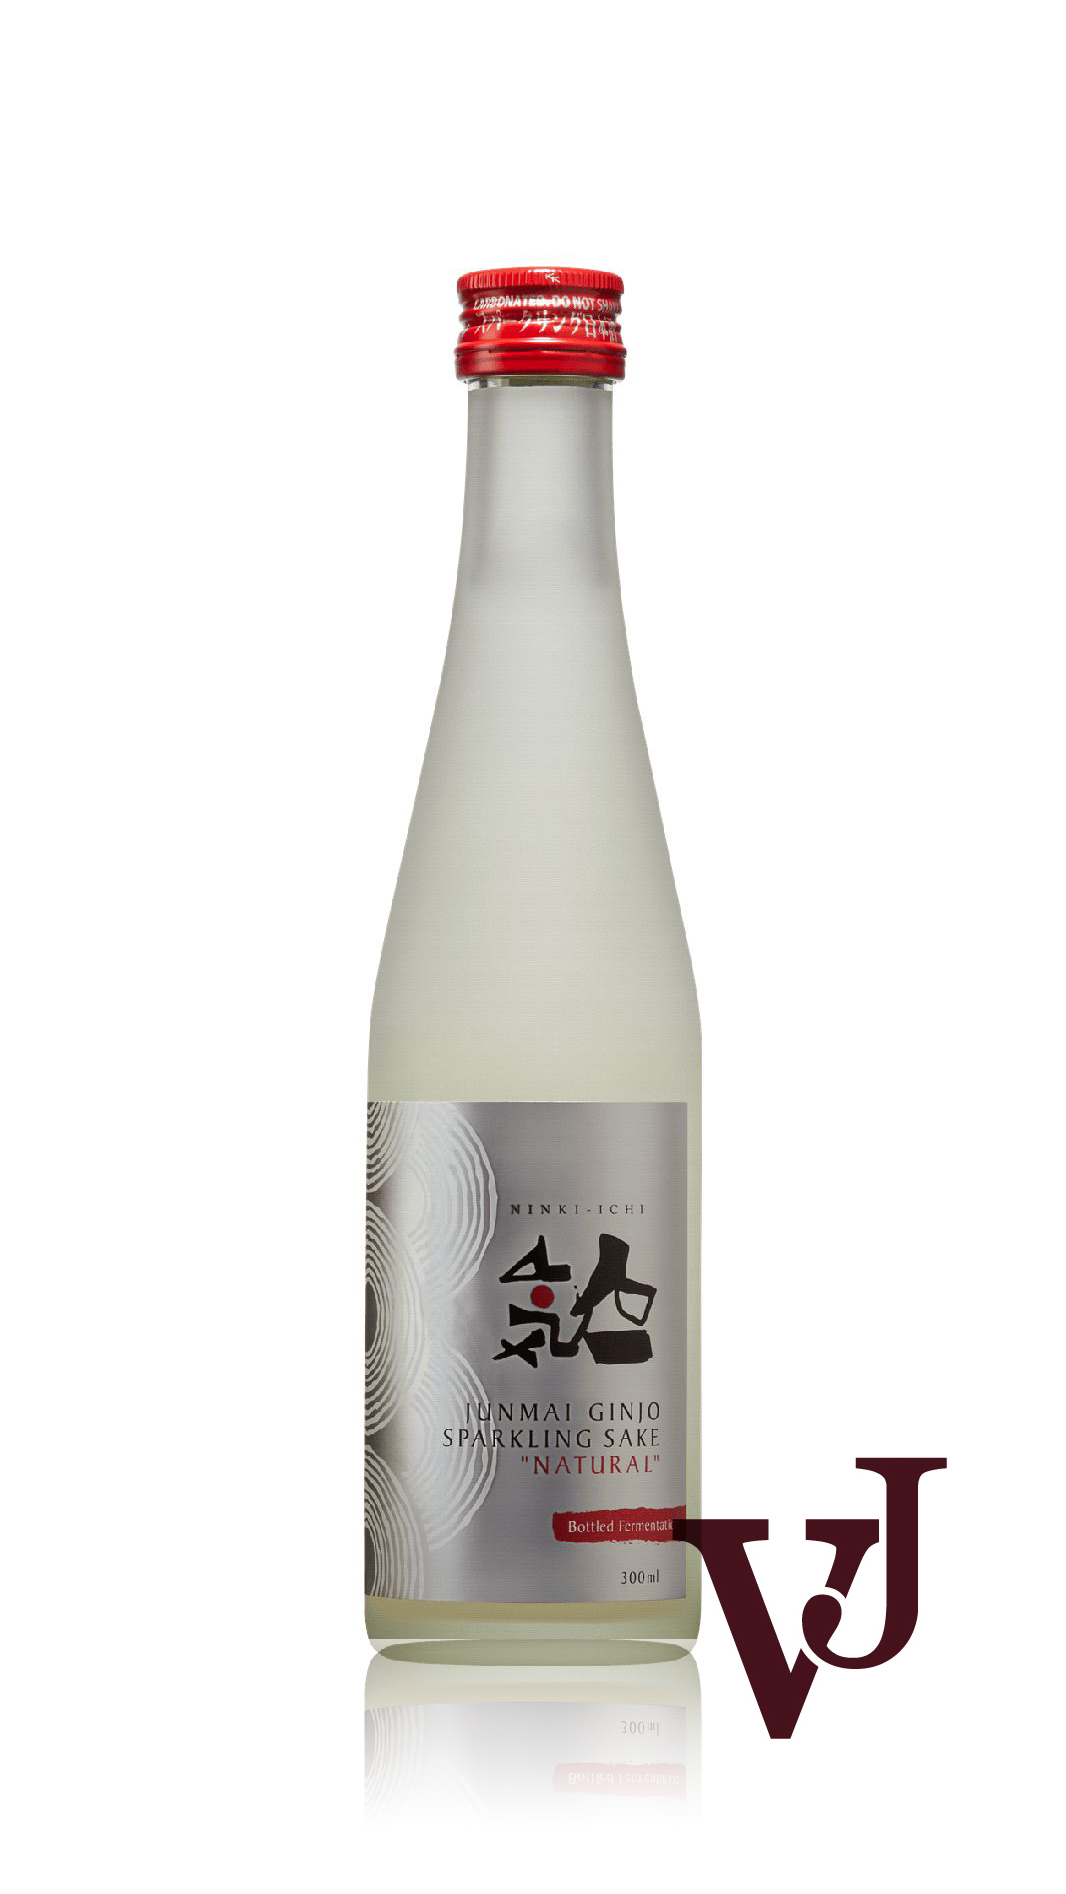 Sake - Ninki-Ichi artikel nummer 7662302 från producenten Flying Brewery från området Japan